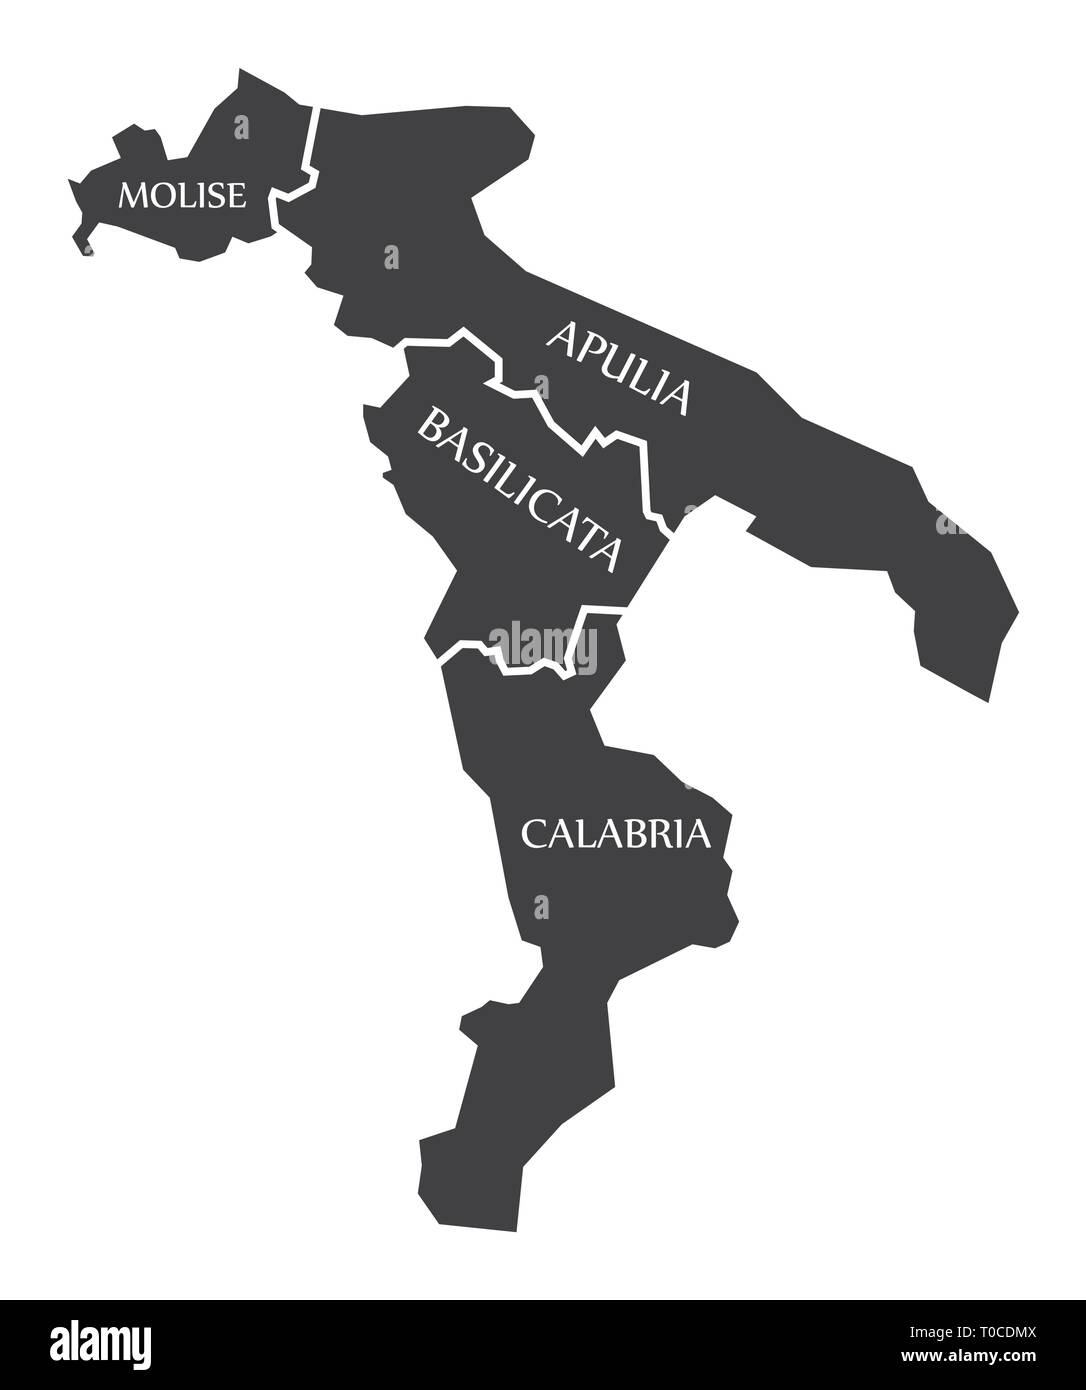 Molise - Pouilles - Basilicata - Calabria région Carte de l'Italie Illustration de Vecteur